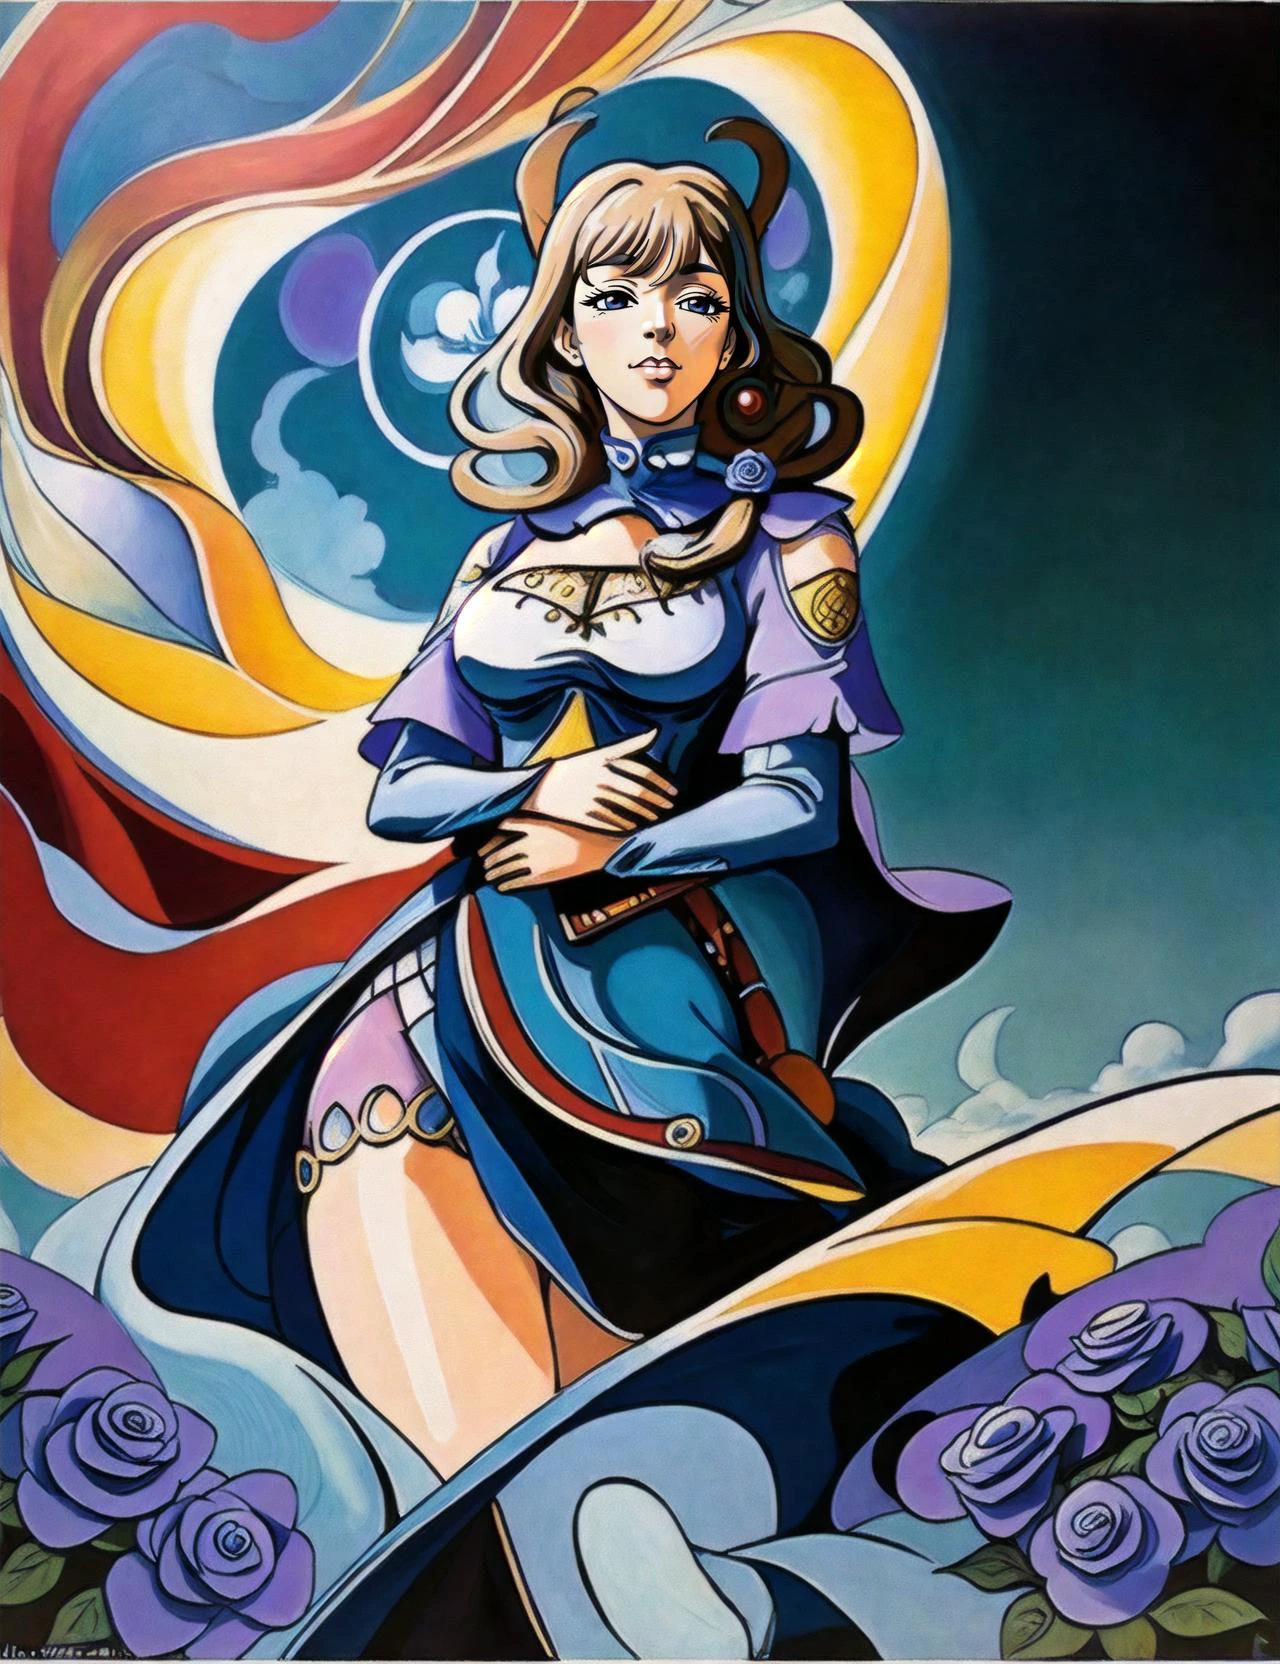 90er Stil, Illustration, Retro-Stil (Von Katsuhiro Otomo), Dunkle Fantasie (Anime:1.2), (große Augen:1.1) , Manga-Filme, lächelnd, imax, komplexe detaillierte, (Beste Qualität:1.2), ((Anime)) ein sanftes, magisches Mädchen (Hände umarmen ein magisches Wesen:1.2), Schönes Feld aus blauen Rosen im Hintergrund, (Genshin-Einfluss:1.1), (zusätzliche Def:1.3), (( von Ali Erturk)) 